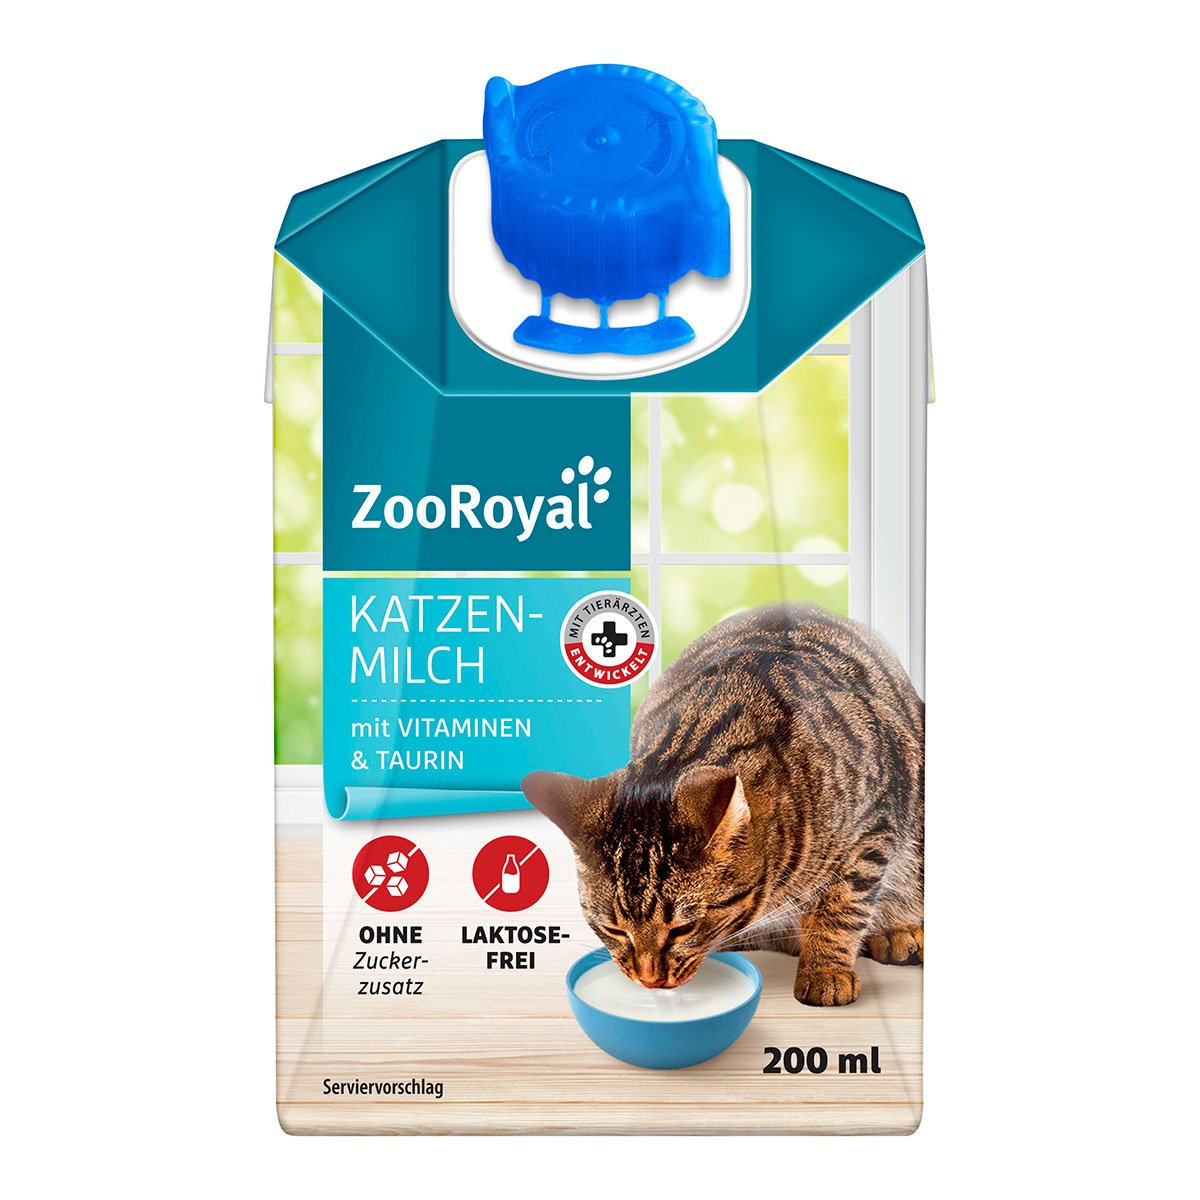 ZooRoyal Katzenmilch mit Vitaminen